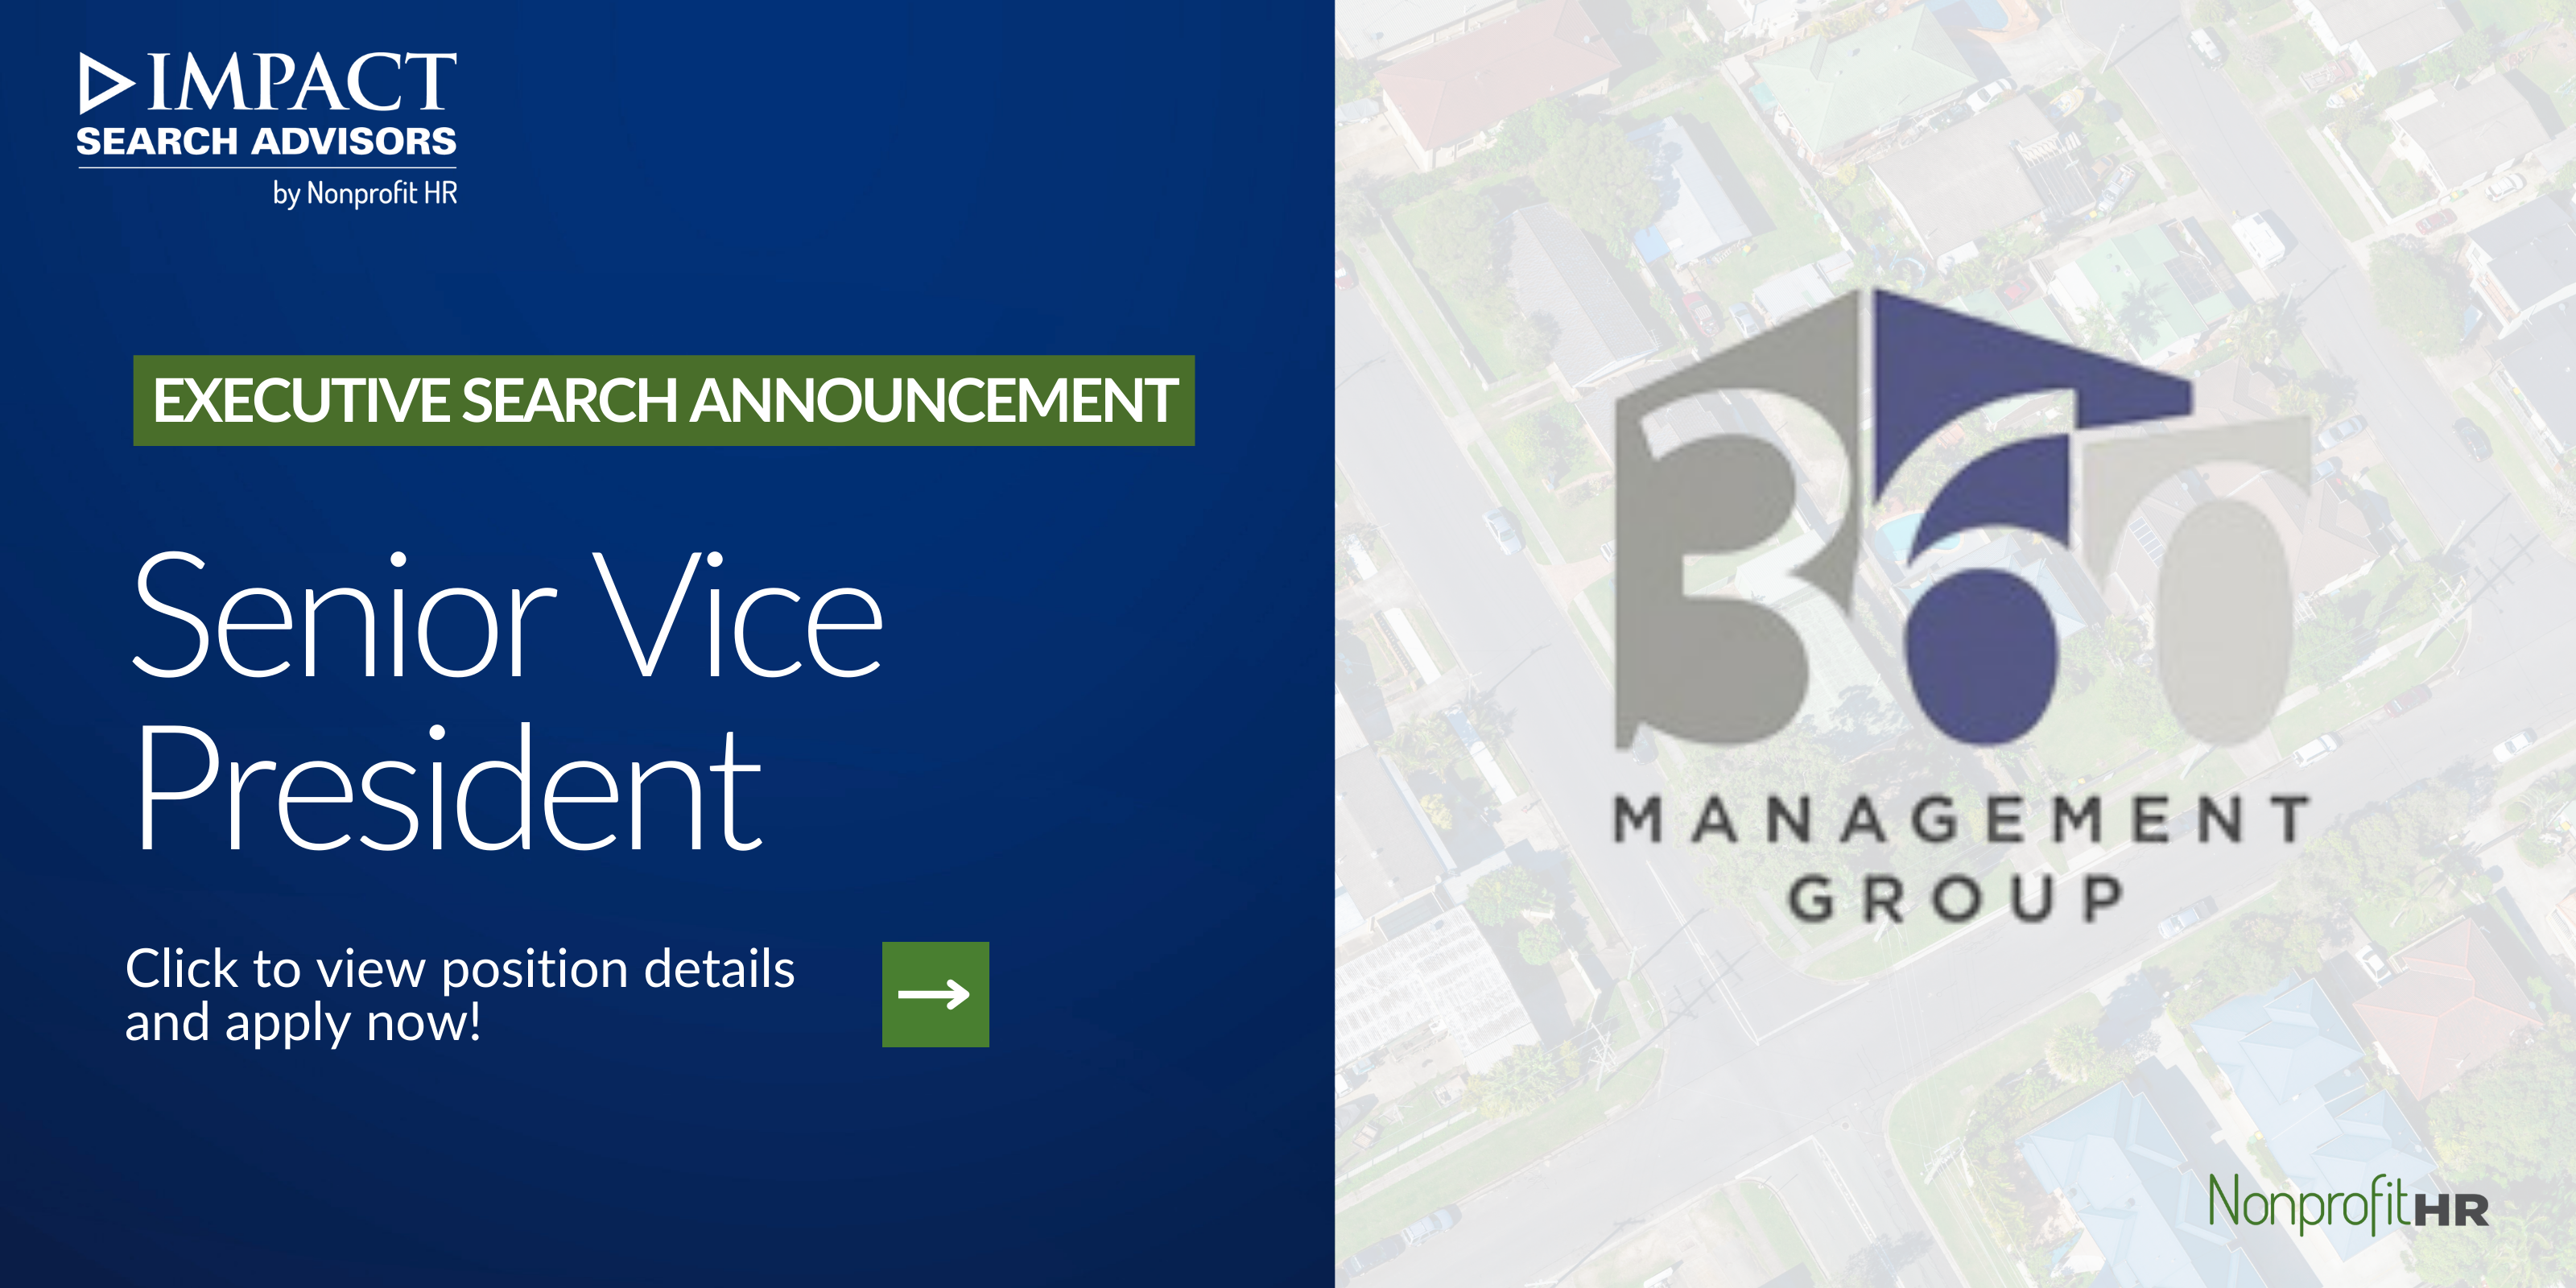 Senior Vice President for 360 Management Group.